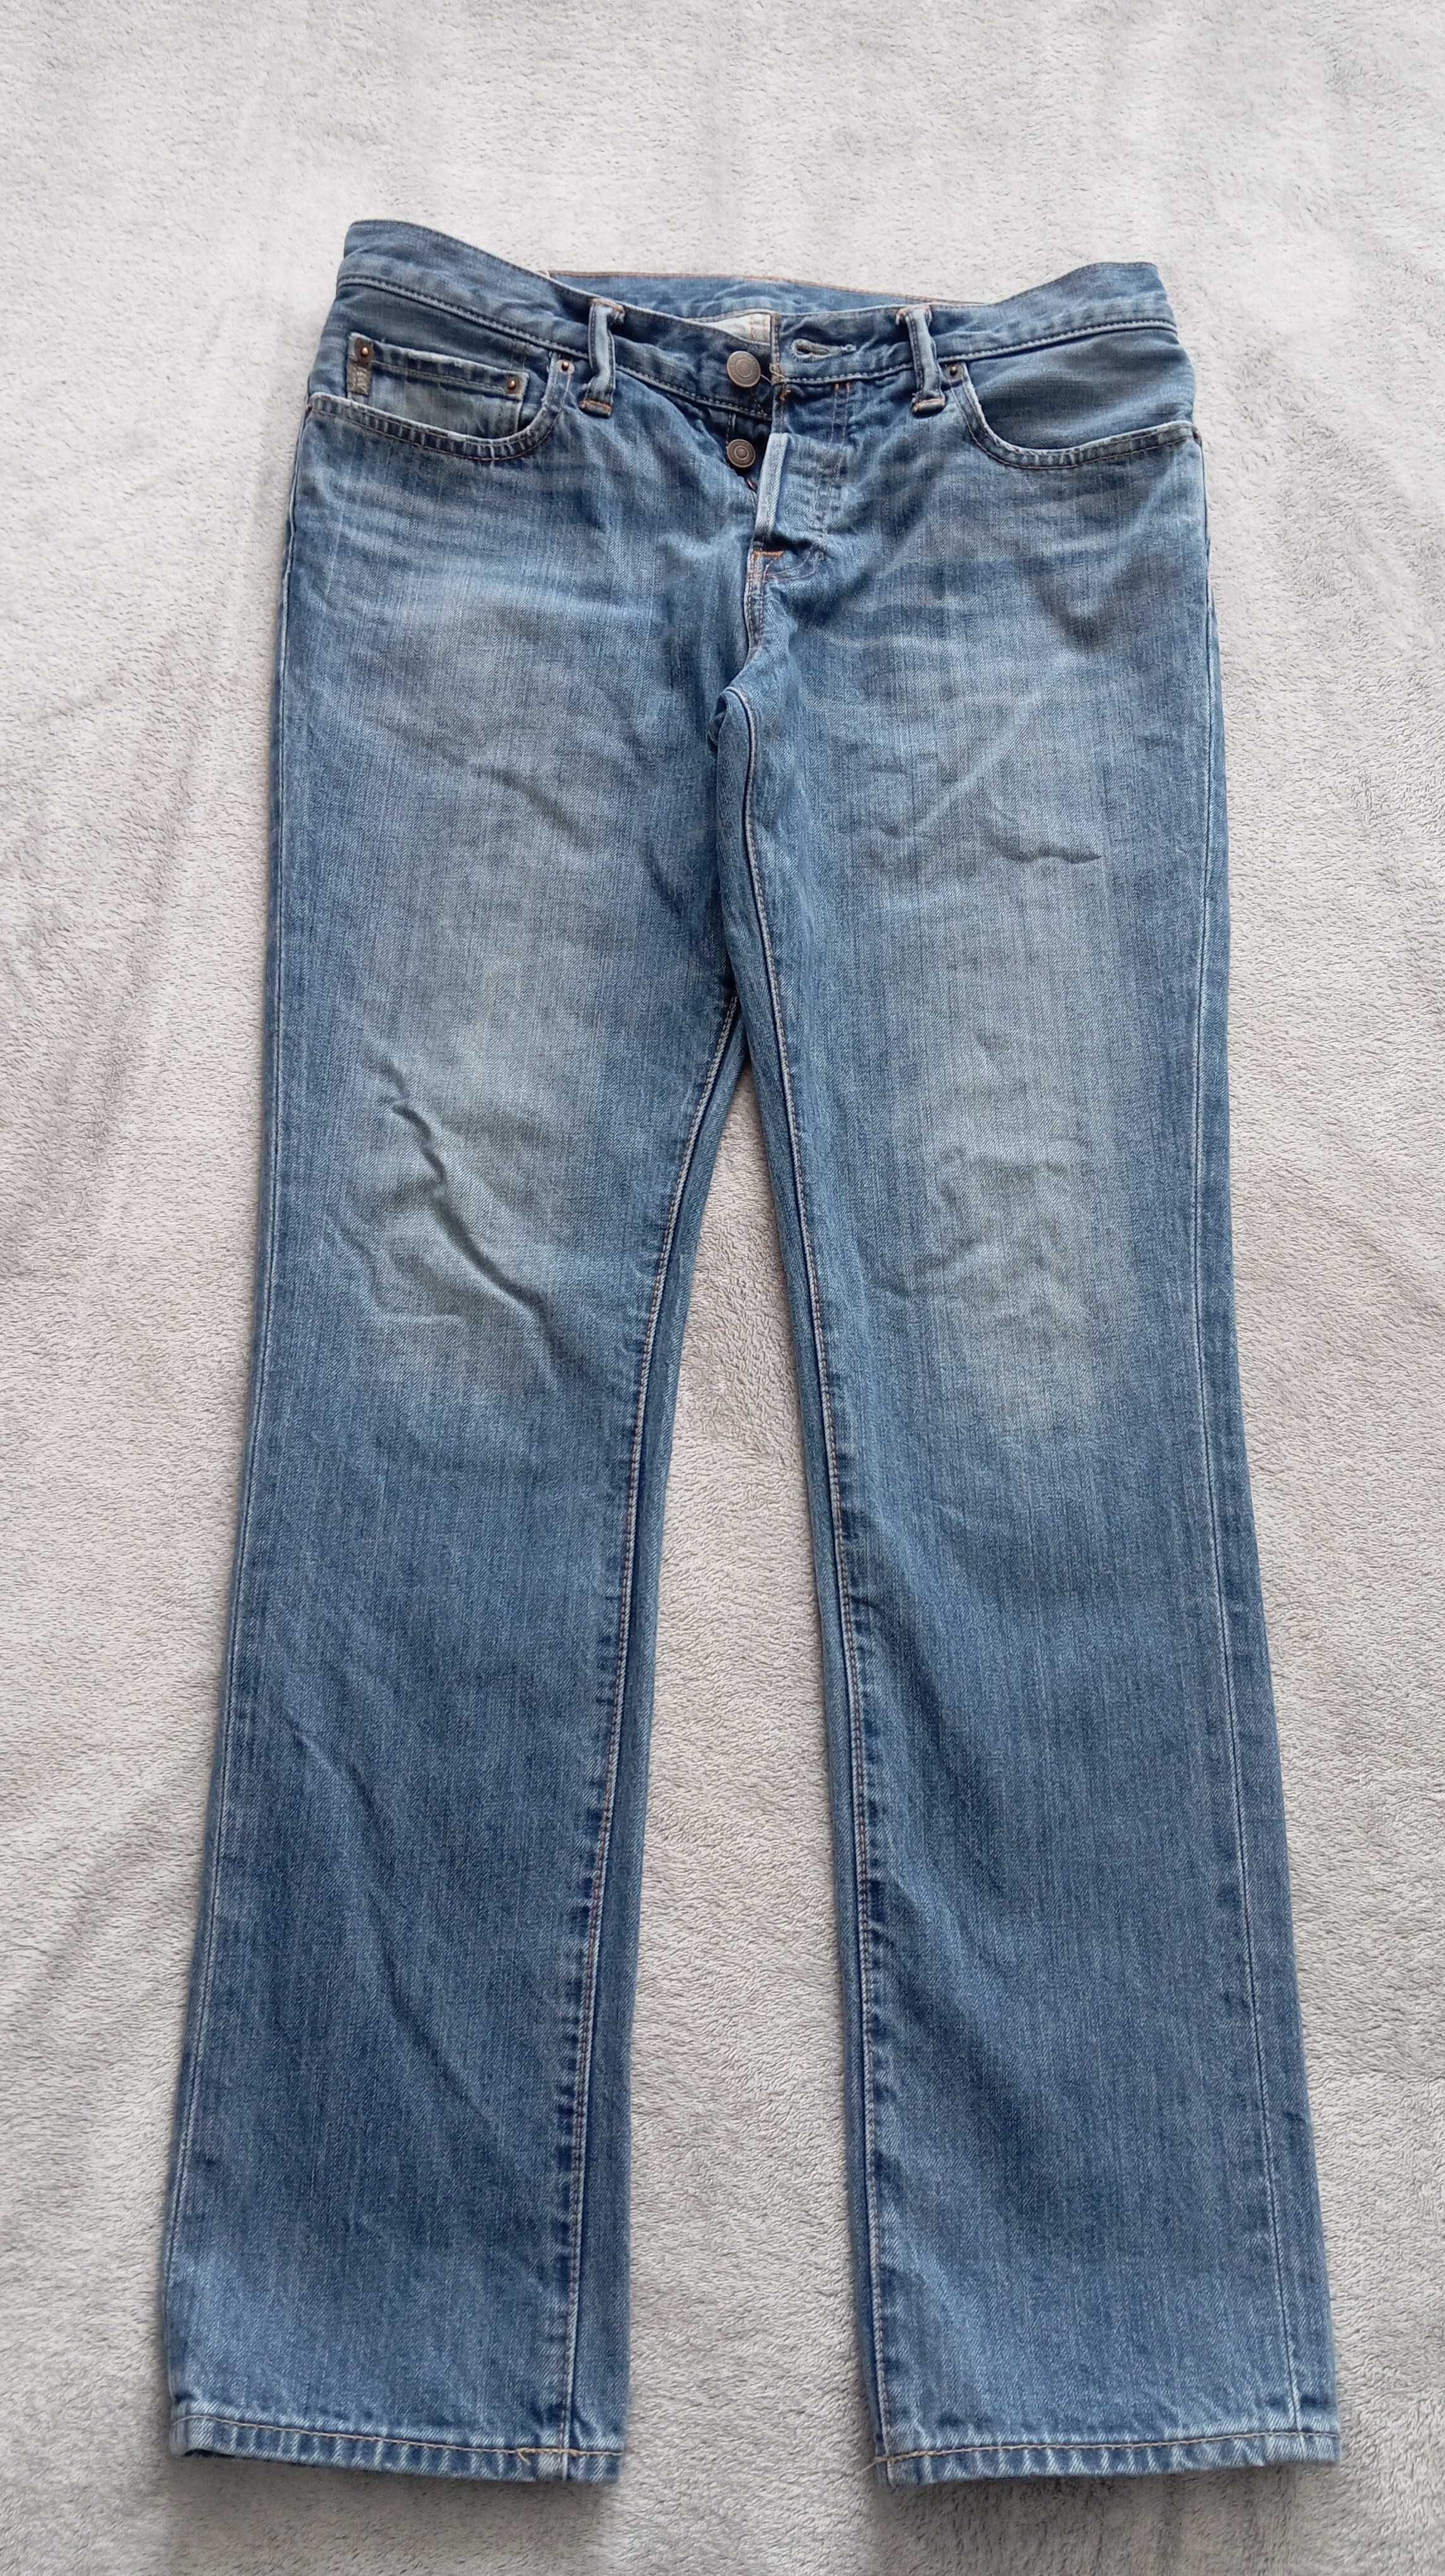 Abercrombie & Fitch spodnie jeans jak Wrangler